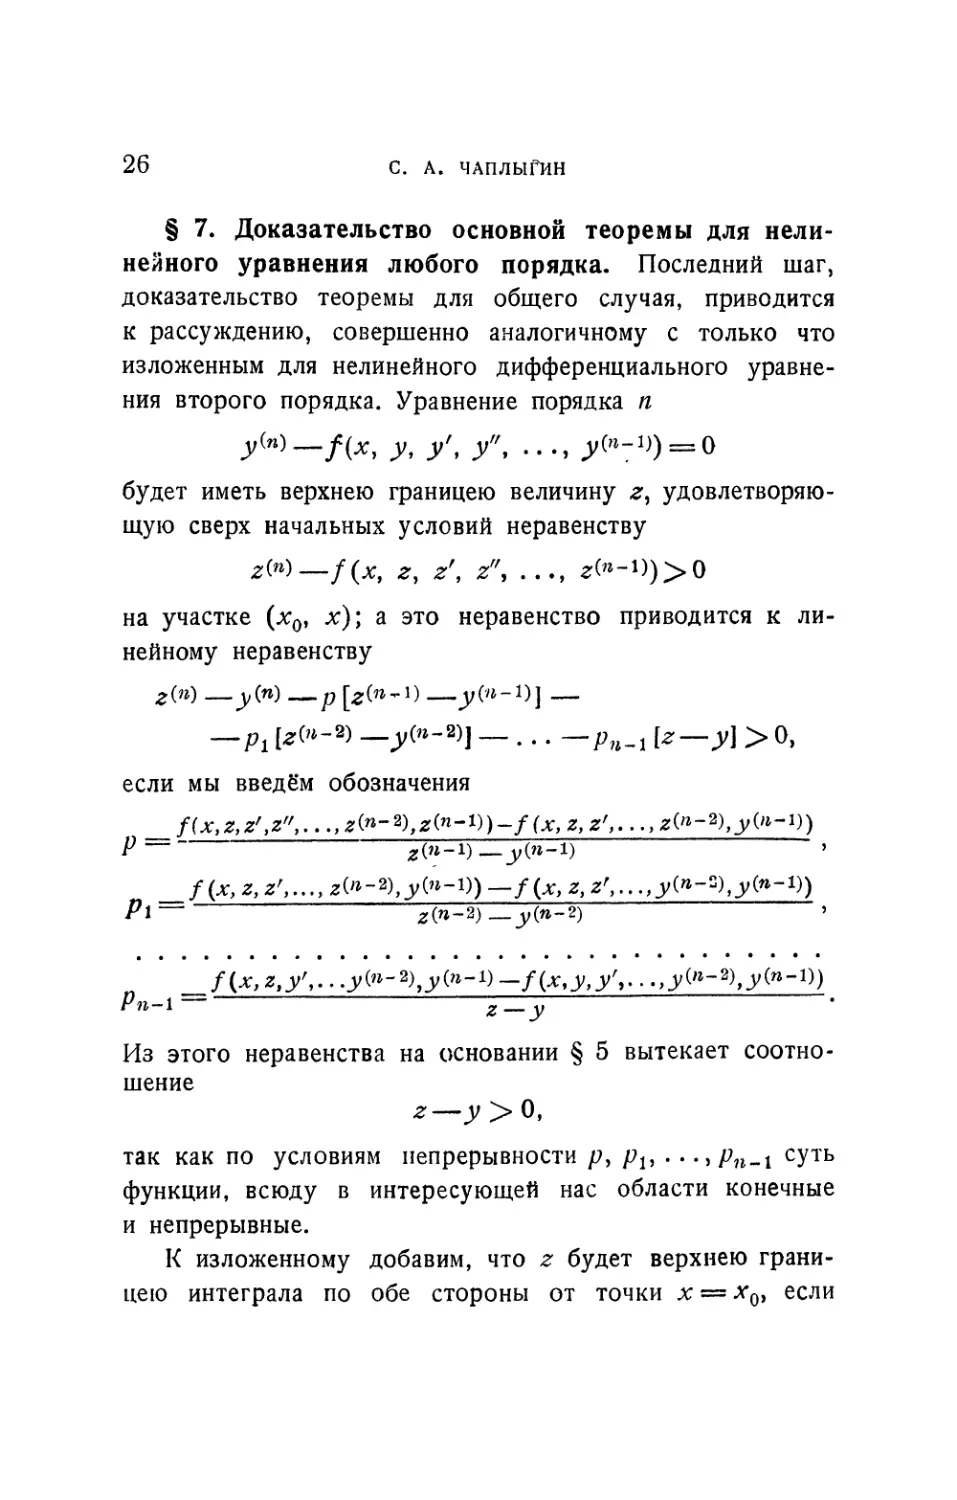 § 7. Доказательство основной теоремы для нелинейного уравнения любого порядка